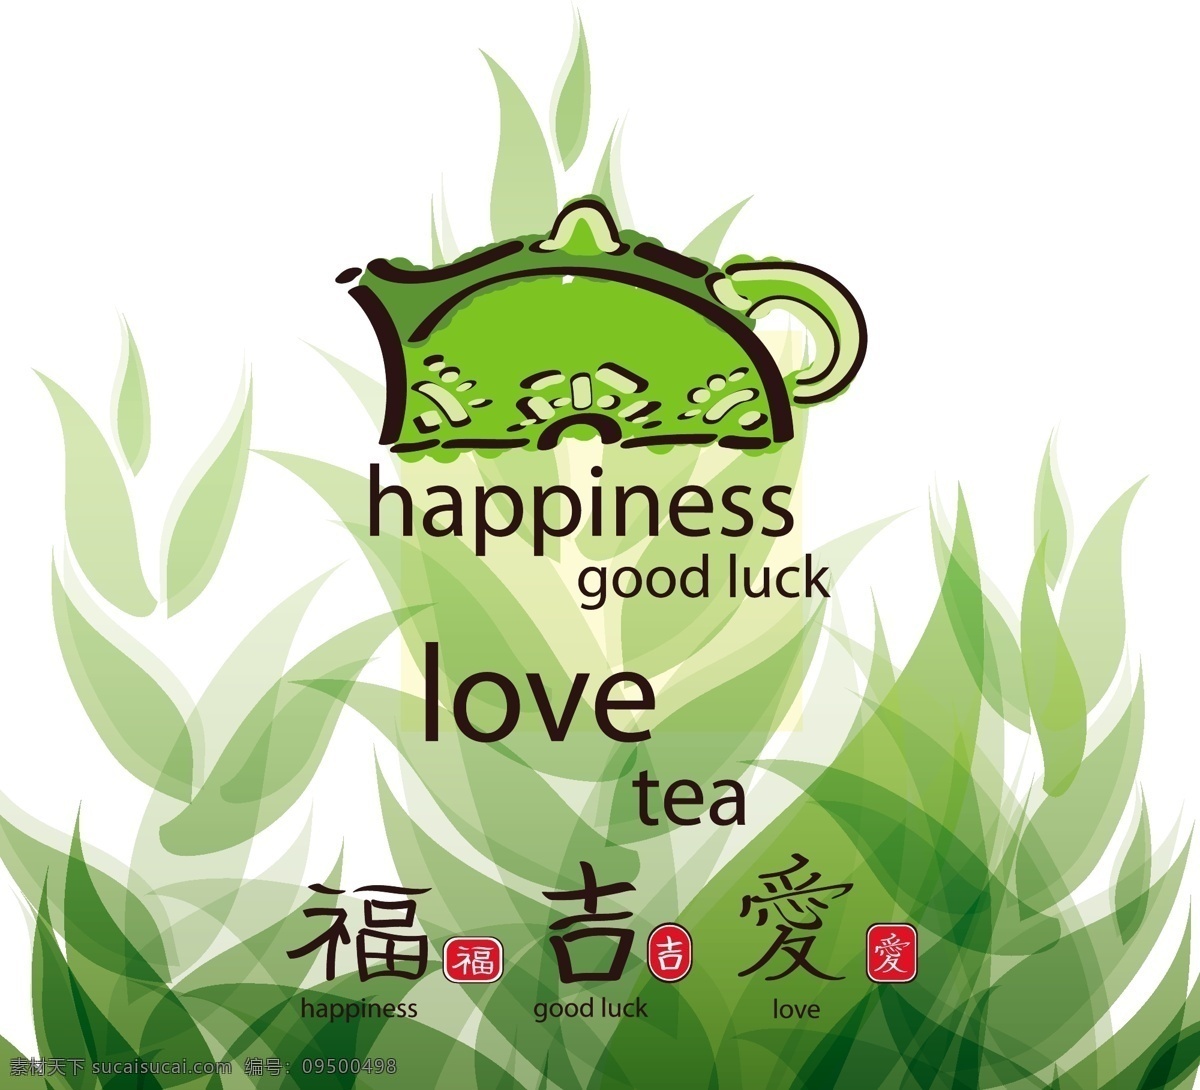 矢量 中国 传统 绿叶 茶壶 绿叶设计 矢量素材 中国传统 中国风 矢量图